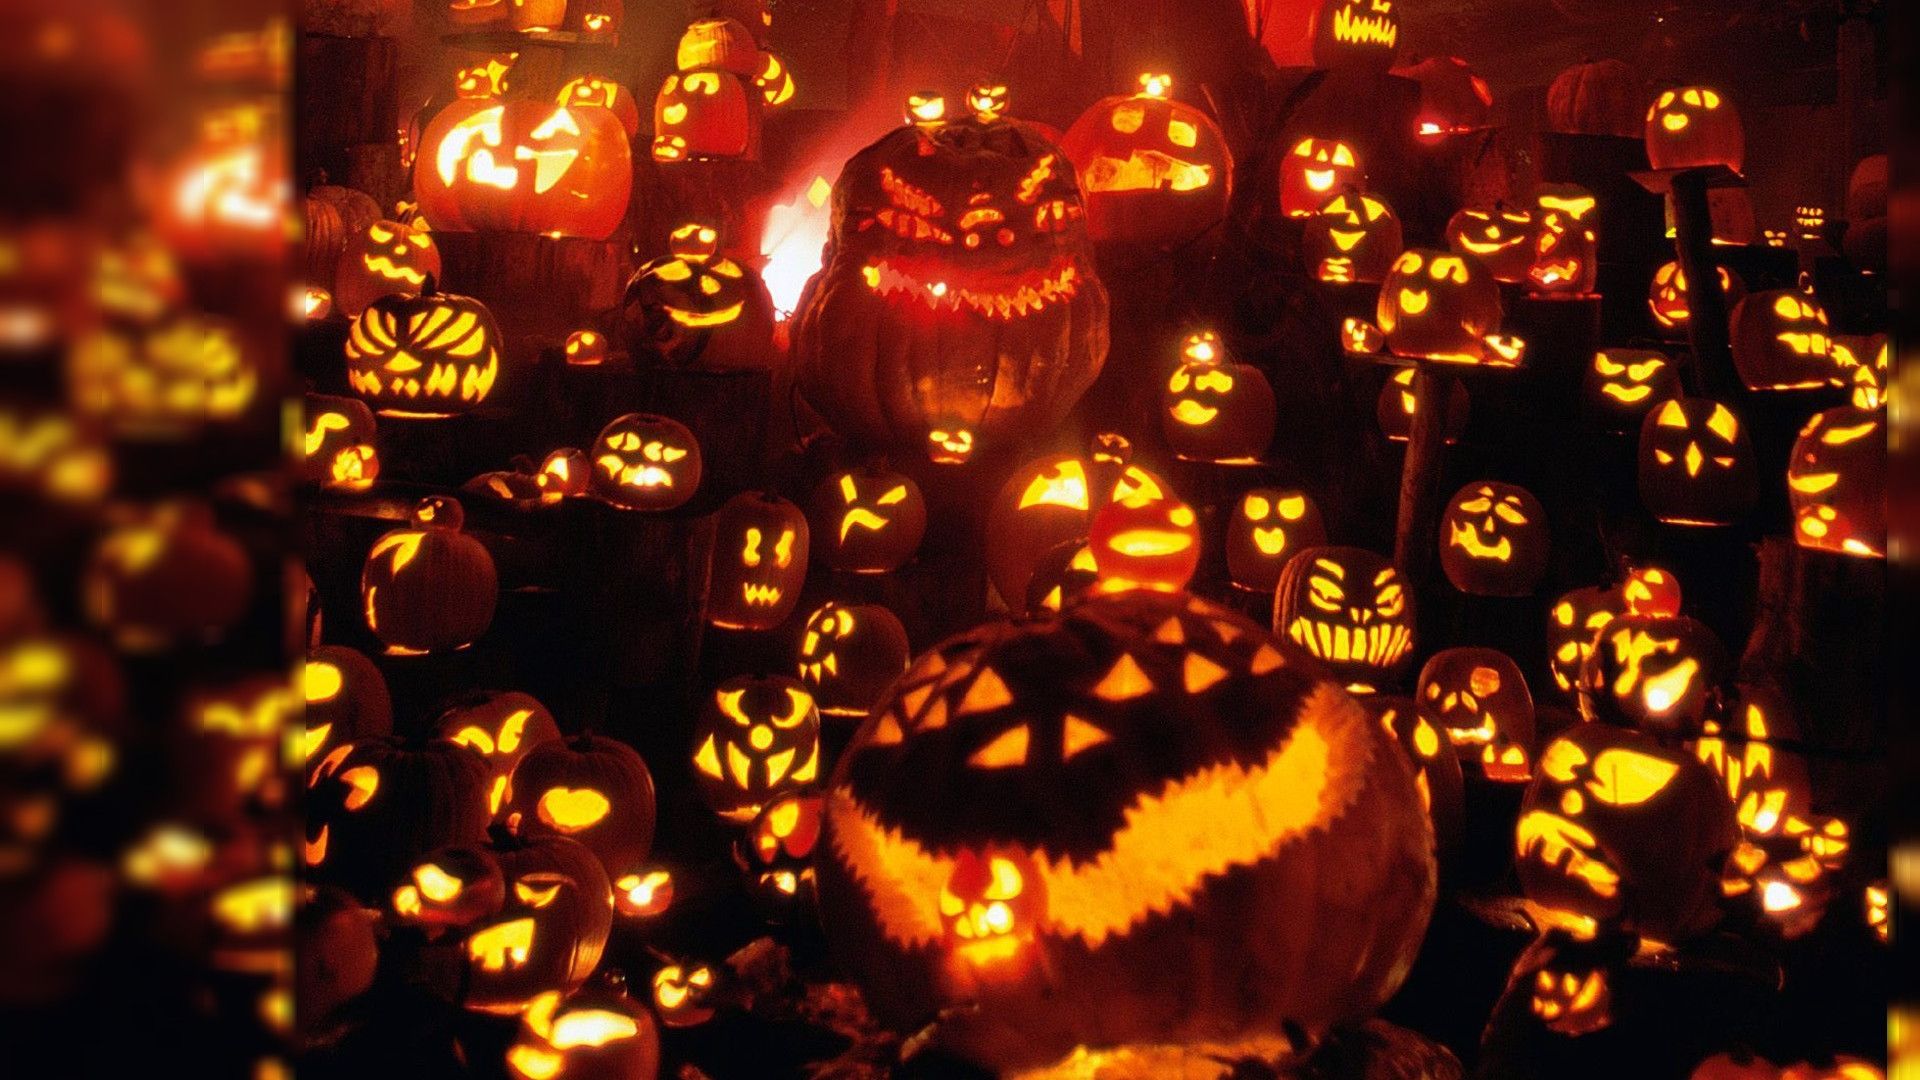 Halloween Pumpkin Backgrounds Pixelstalknet